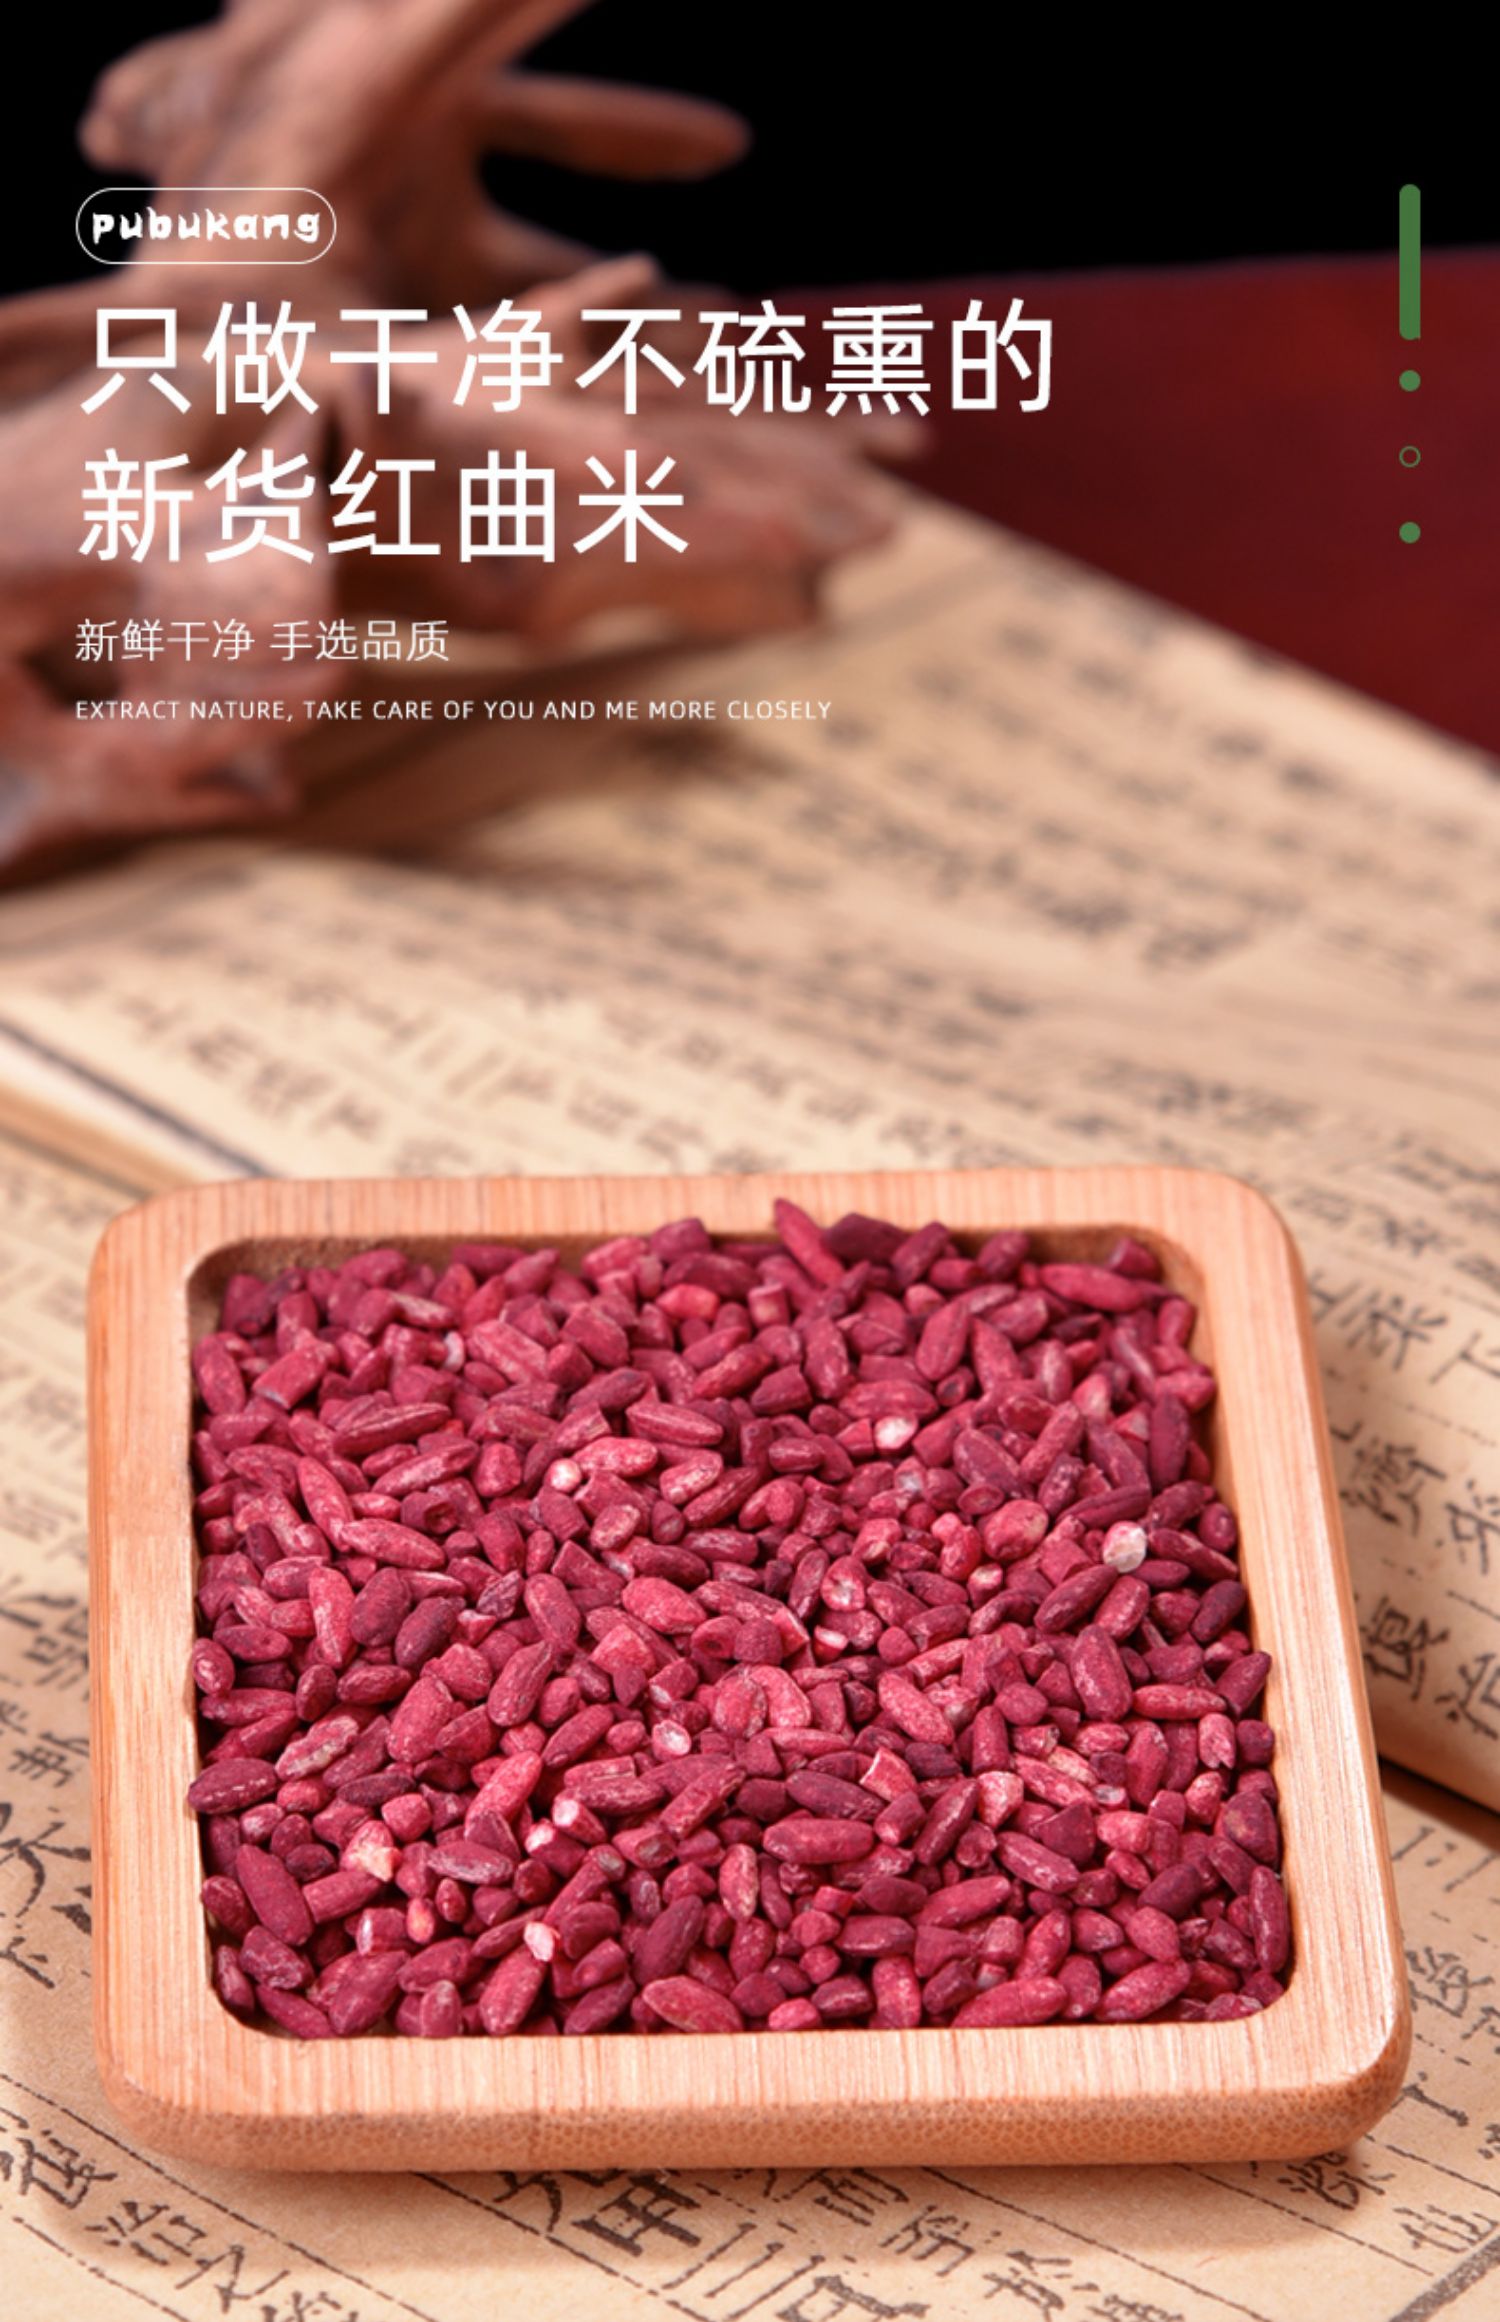 北京同仁堂红曲米卤肉专用中药商用上色药用米正宗食用特级天然红曲米